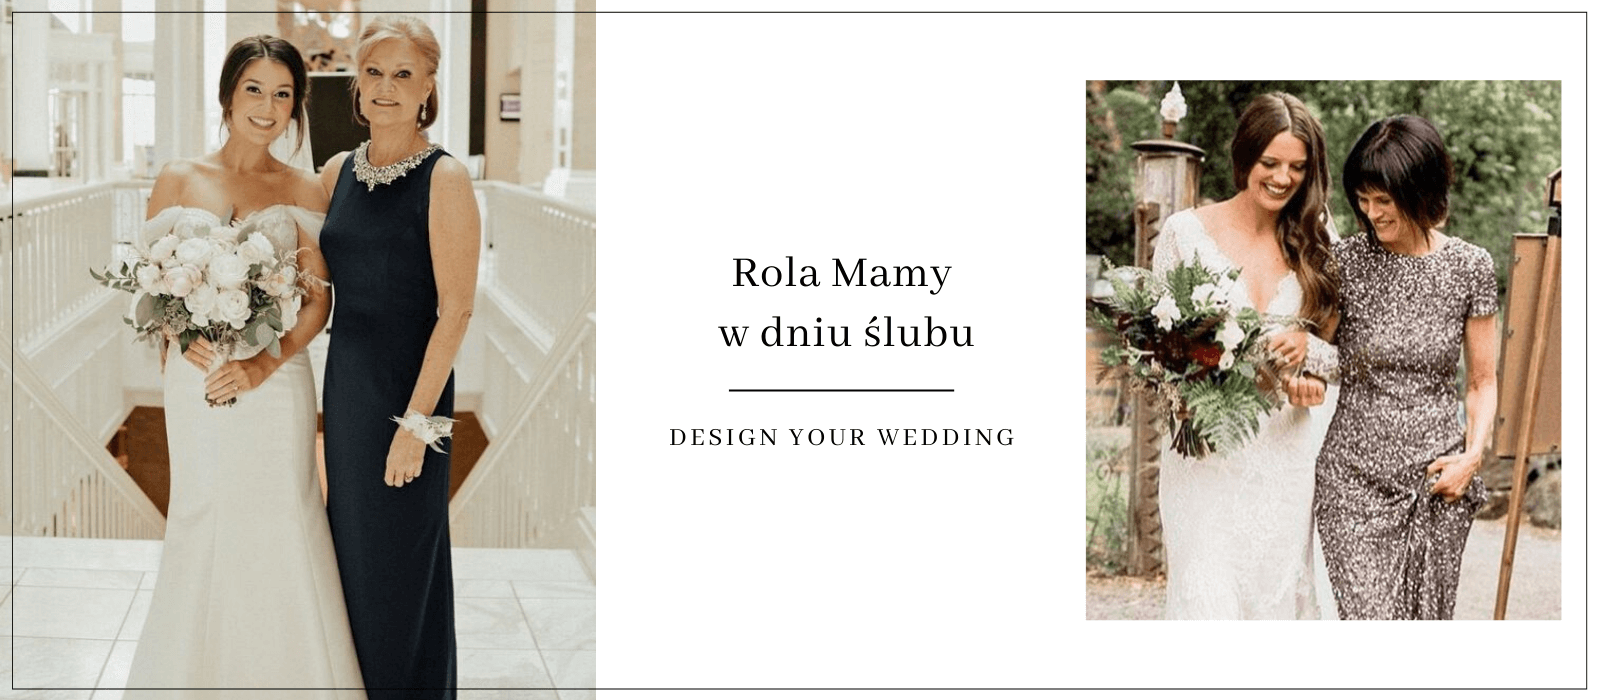 Rola mamy w dniu ślubu Design Your Wedding